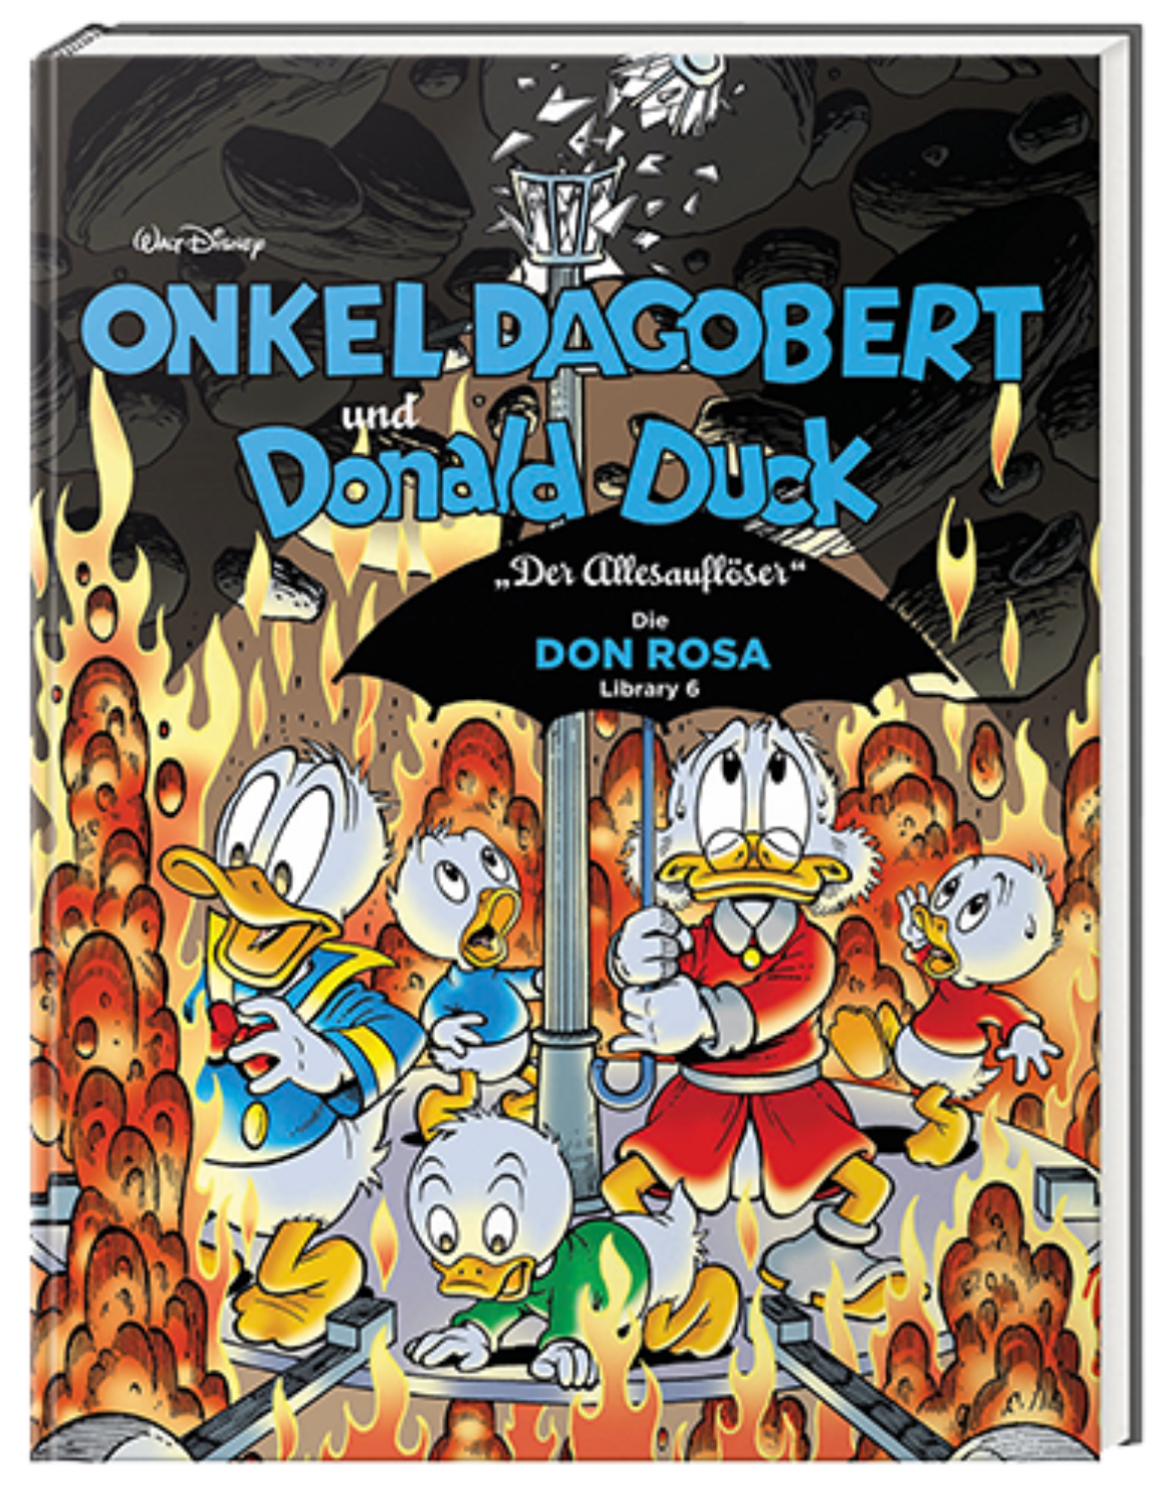 ONKEL DAGOBERT und DONALD DUCK - Die Don Rosa Library Nr. 6